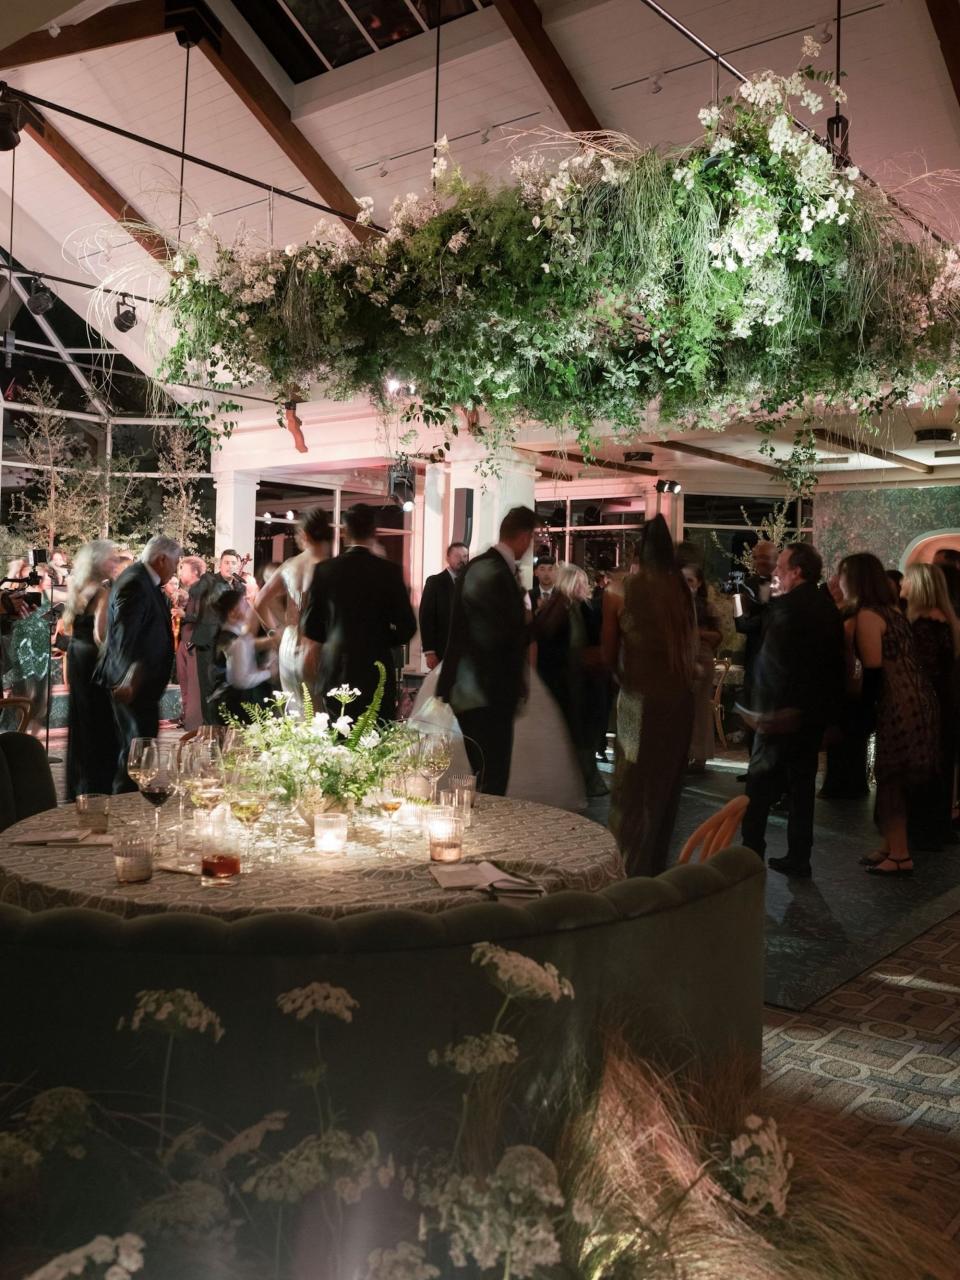 A wedding reception where people dance under a massive floral arrangement.